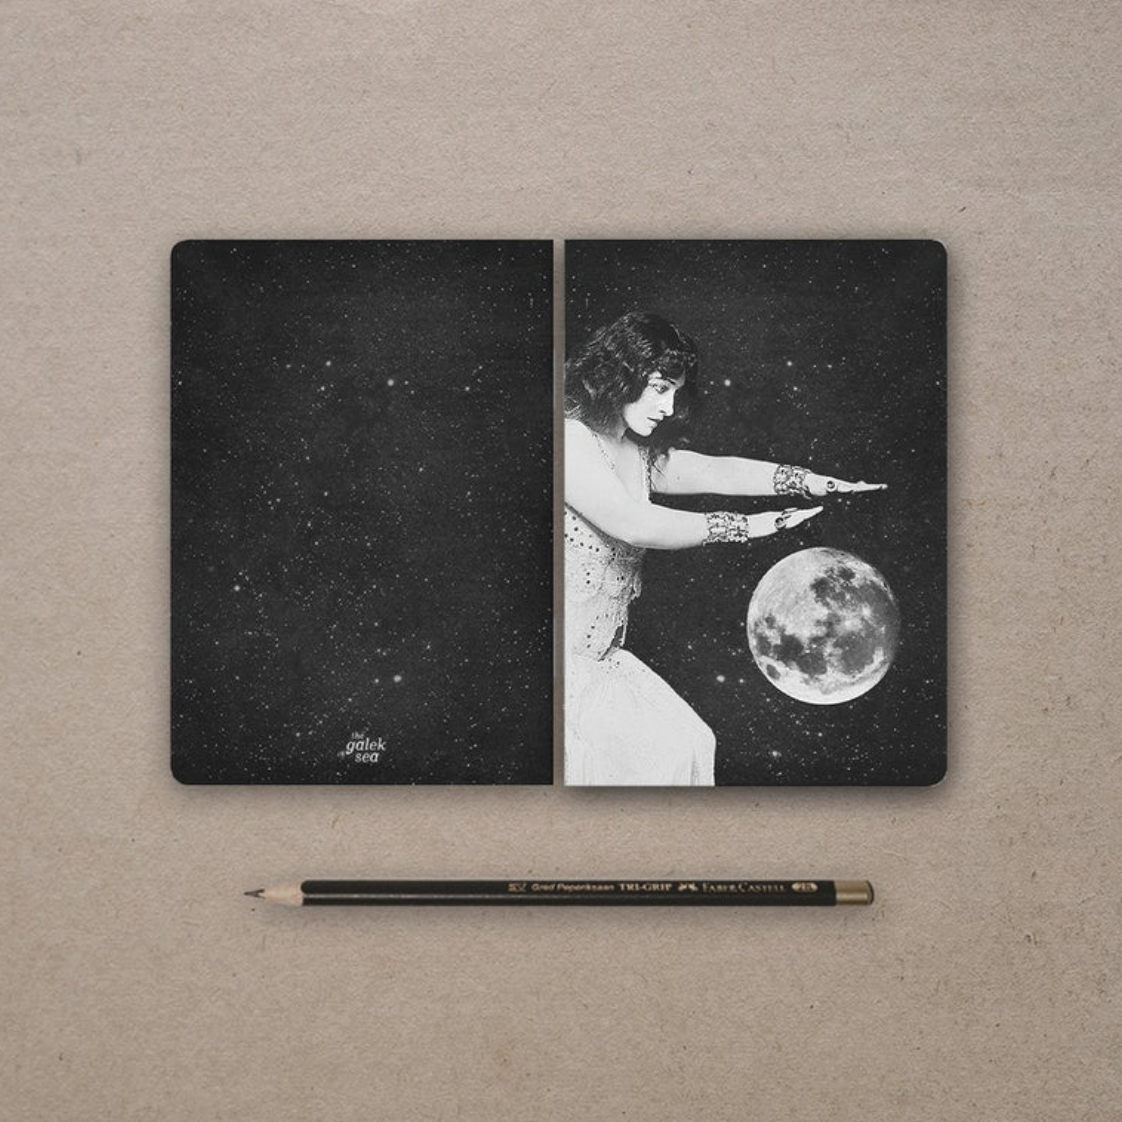 Notebook (2 Pack) - Woman & Moon (Galek Sea)